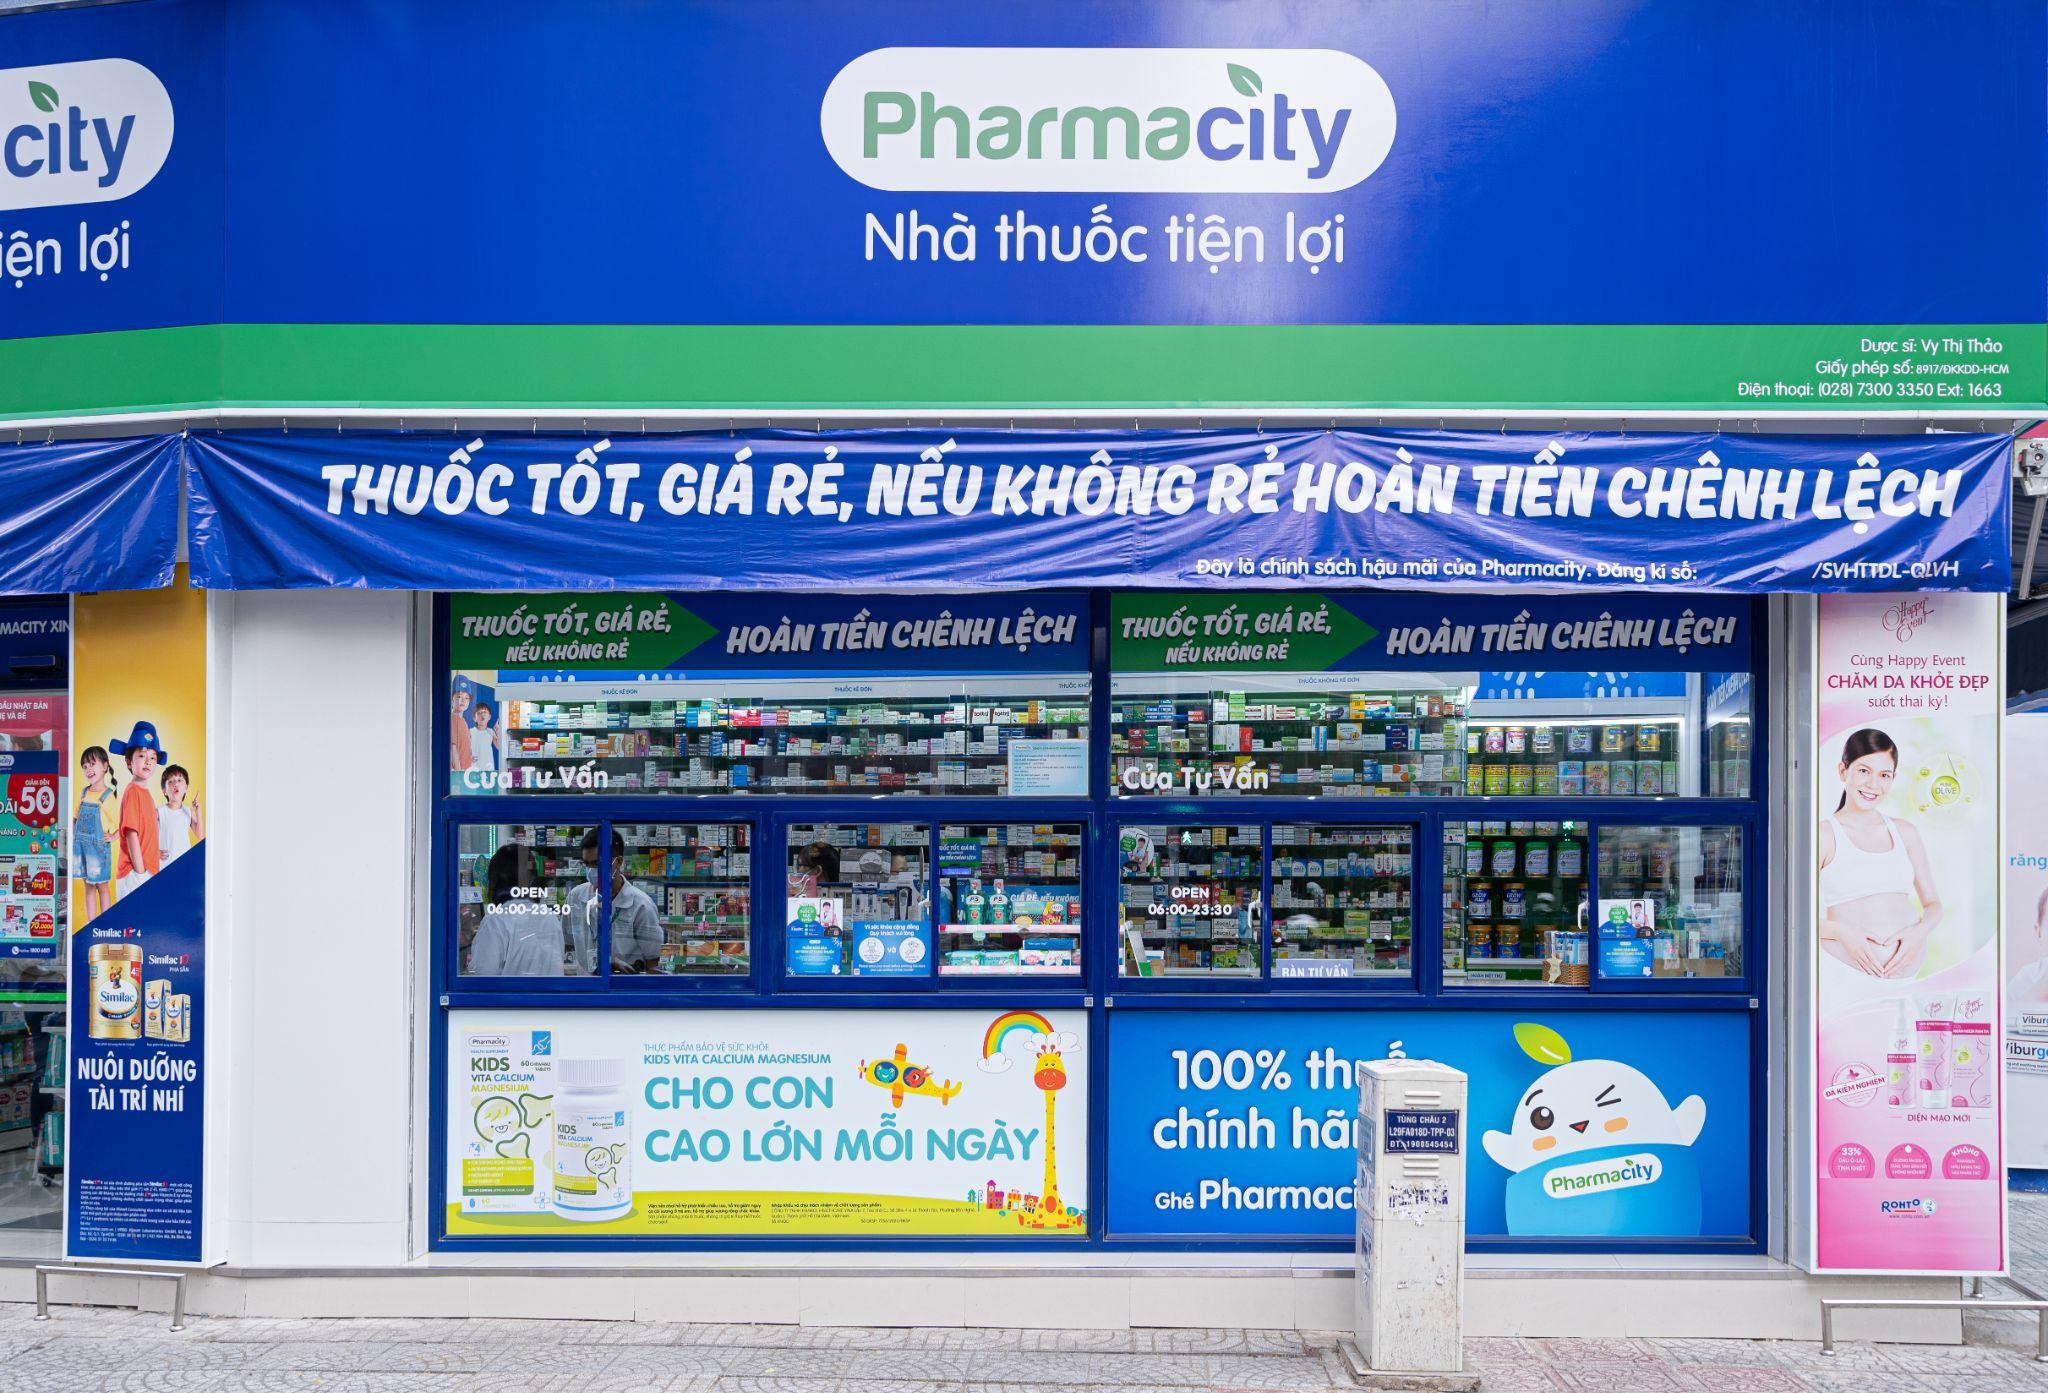 

Pharmacity đang là đơn vị có số lượng cửa hàng thuốc nhiều nhất trên cả nước với tổng cộng 1.093 nhà thuốc
